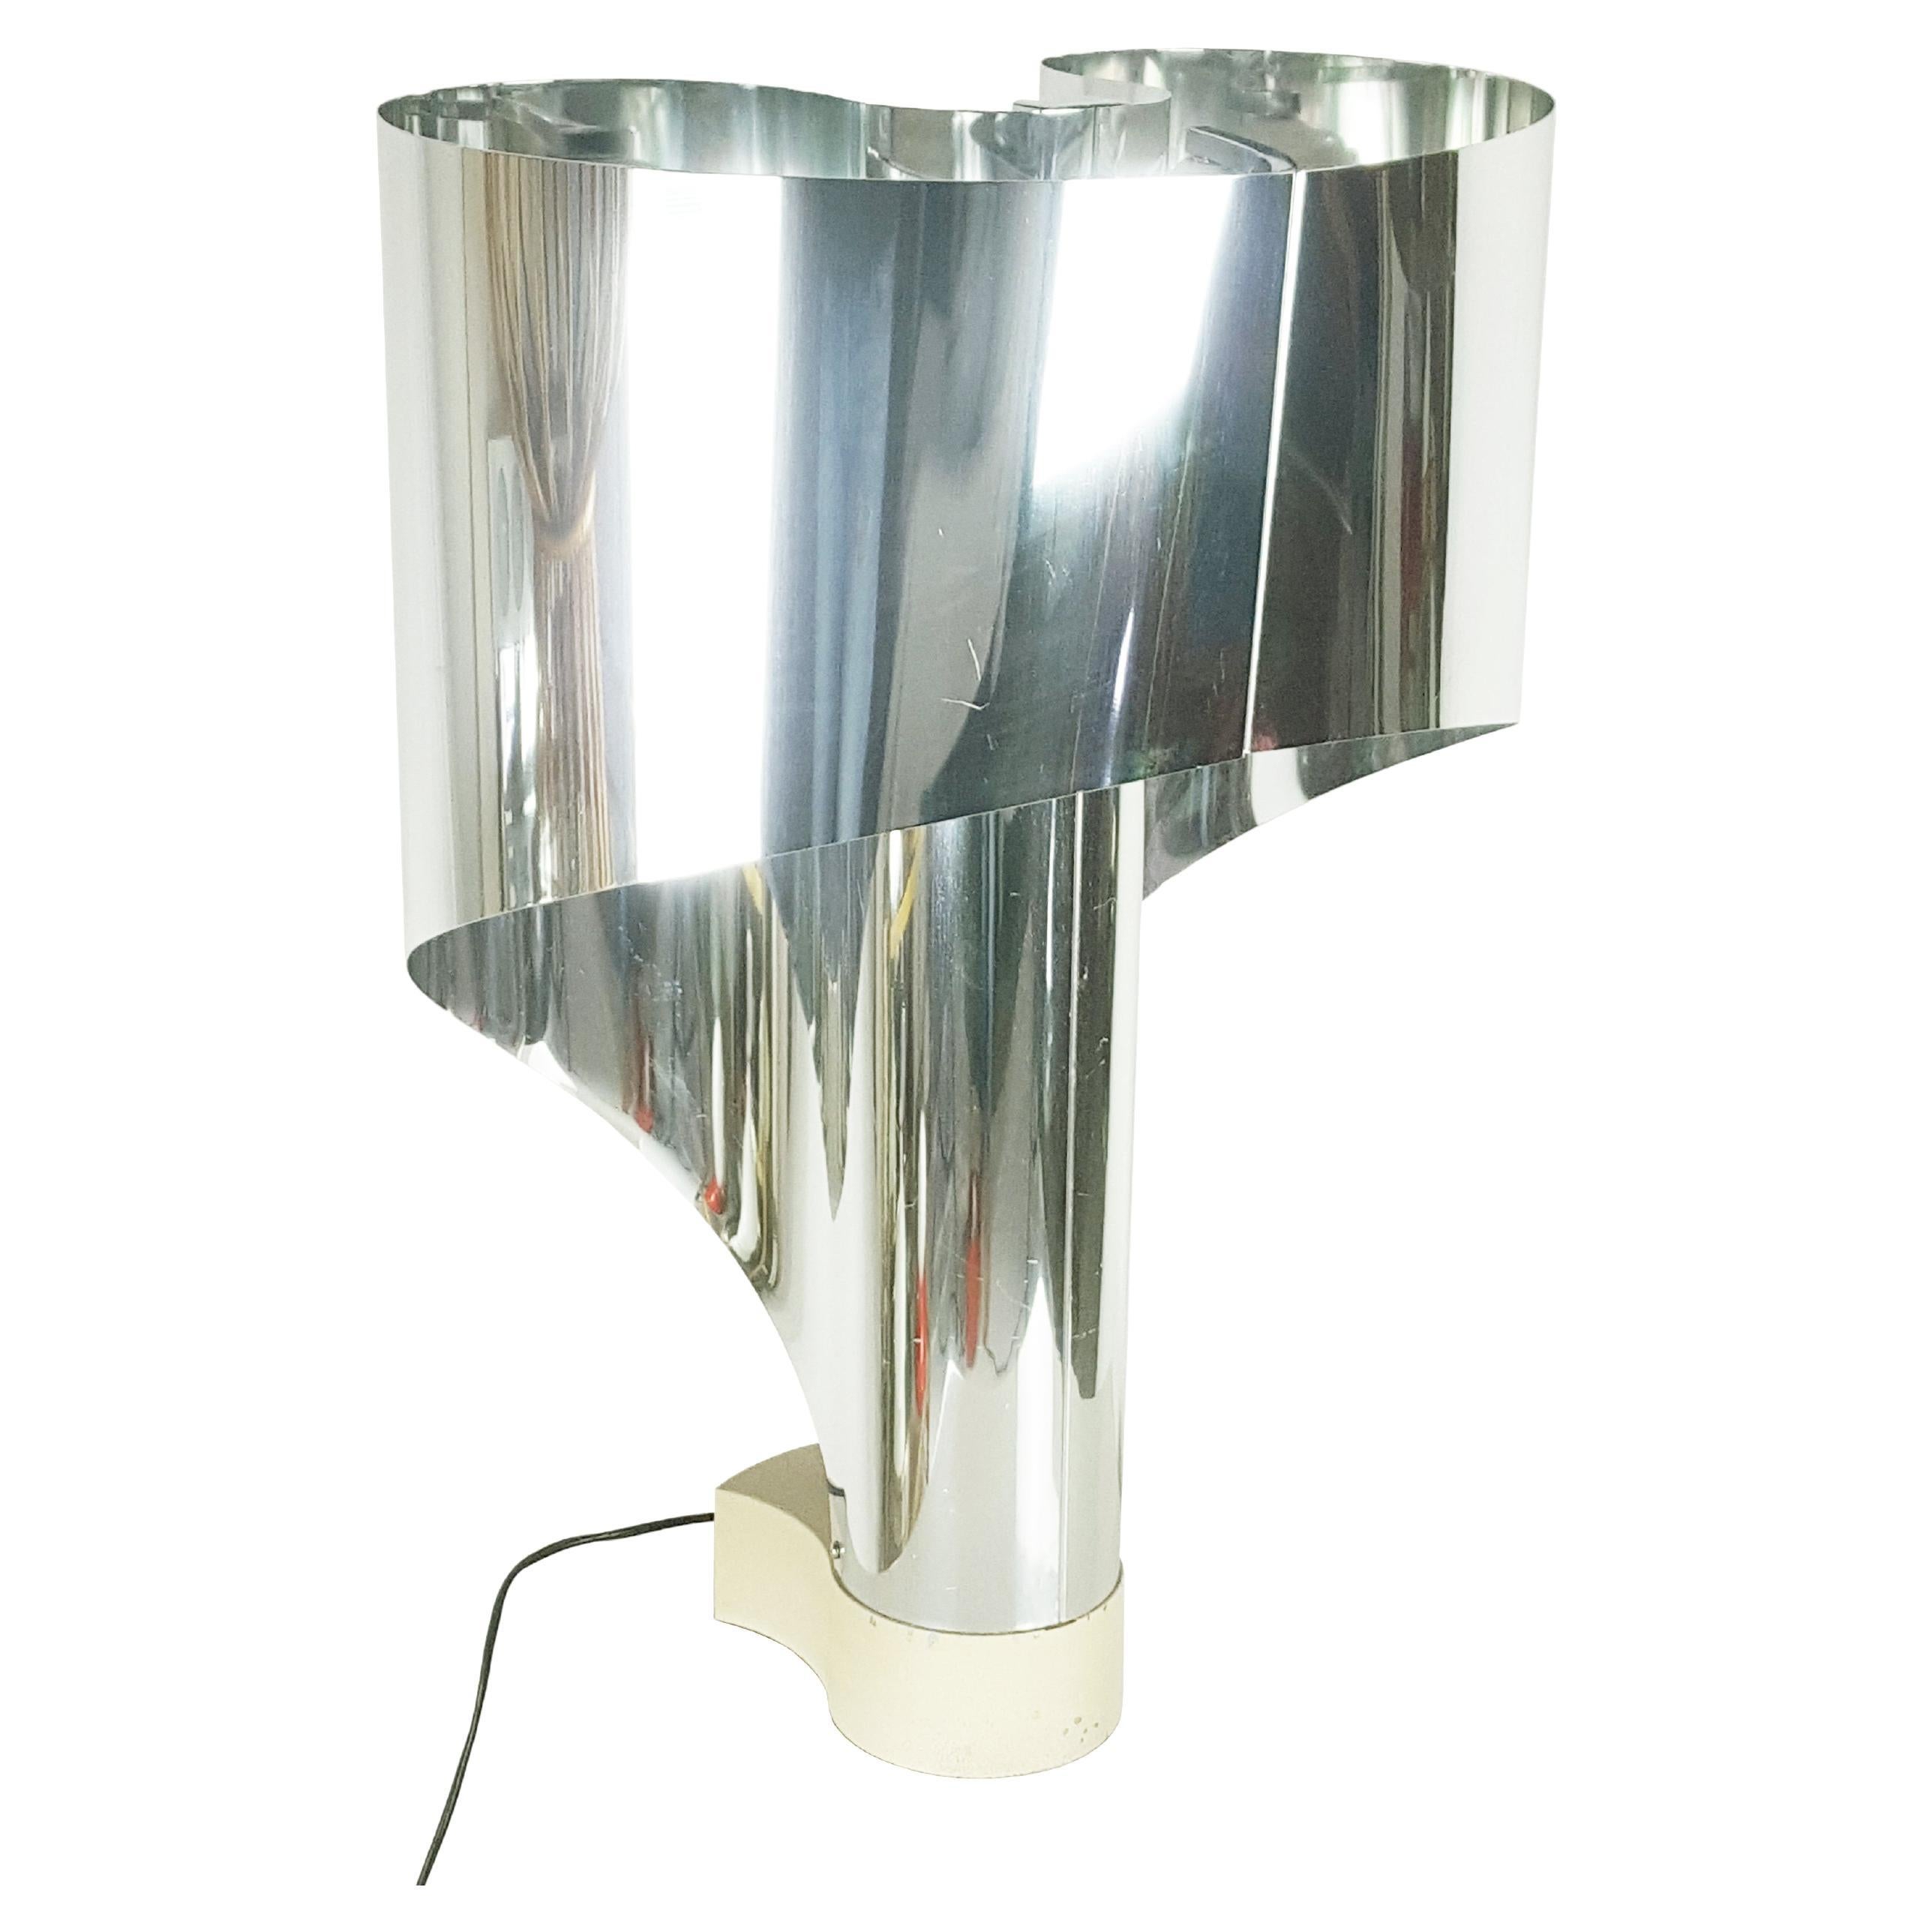 Chromed & painted metal Spinnaker table lamp by Corsini & Wiskemann for Stilnovo